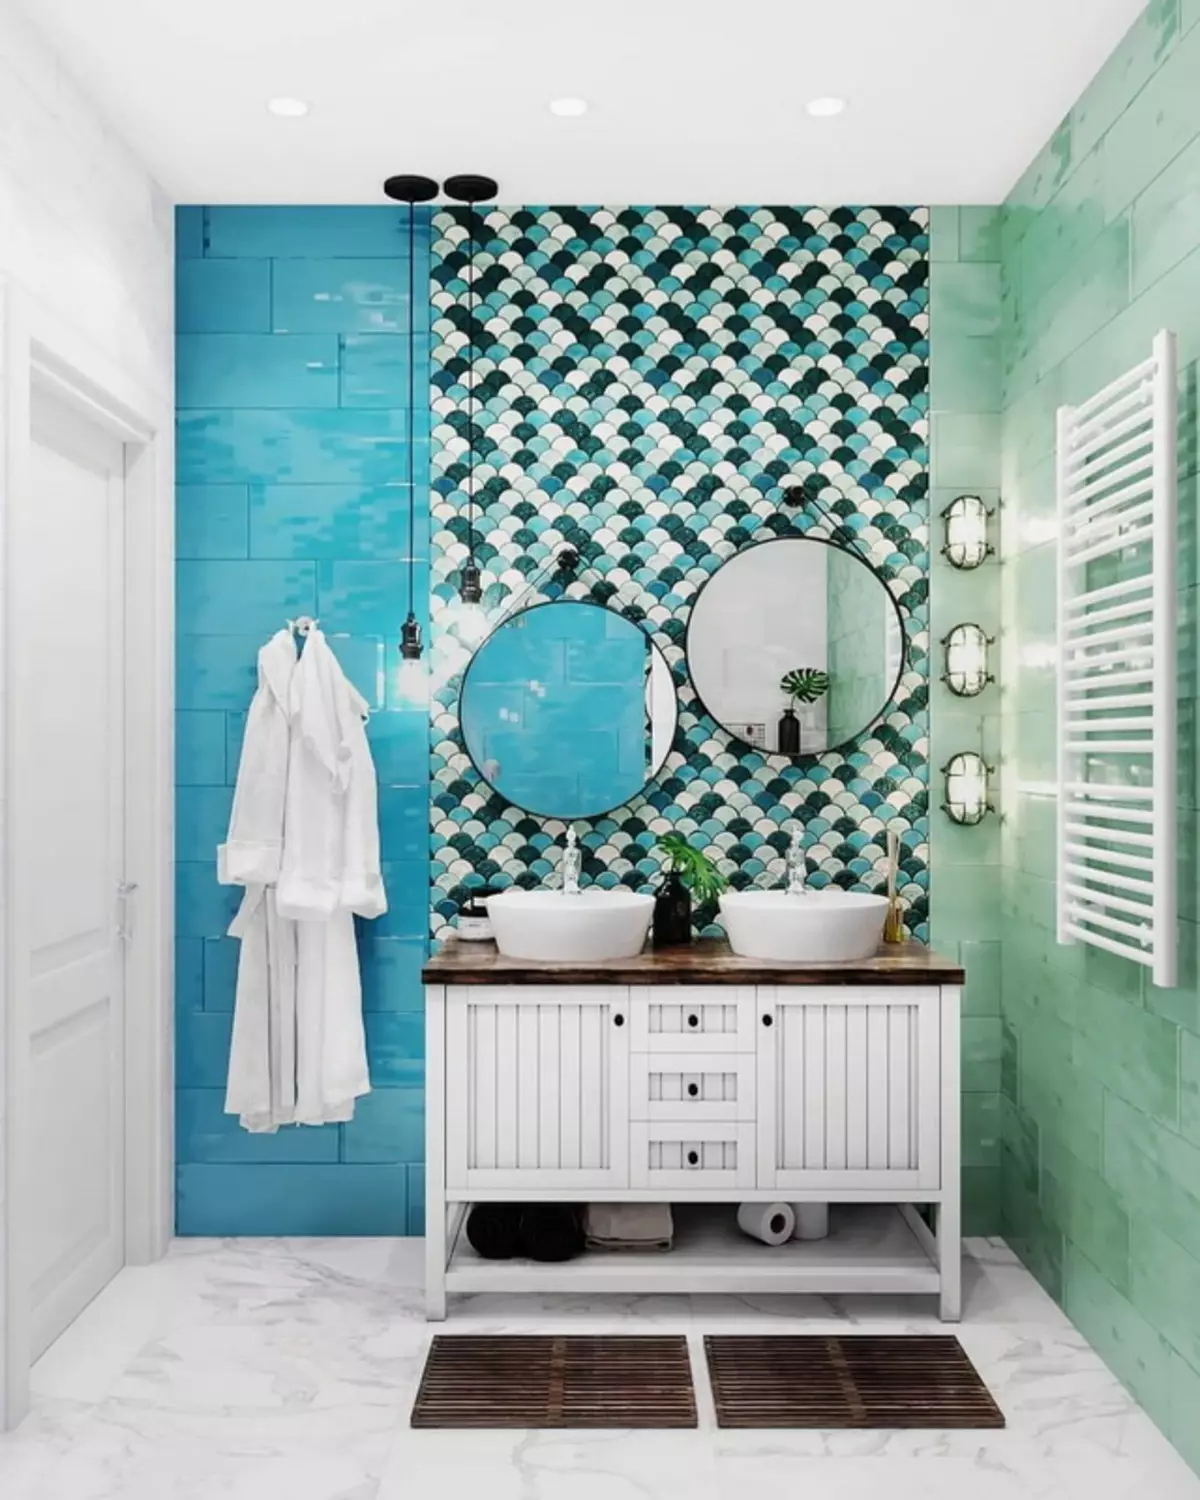 Baño turquesa (61 fotos): Ejemplos de diseño de baño en este color. Entendemos en colores, creamos un hermoso interior. 10203_33